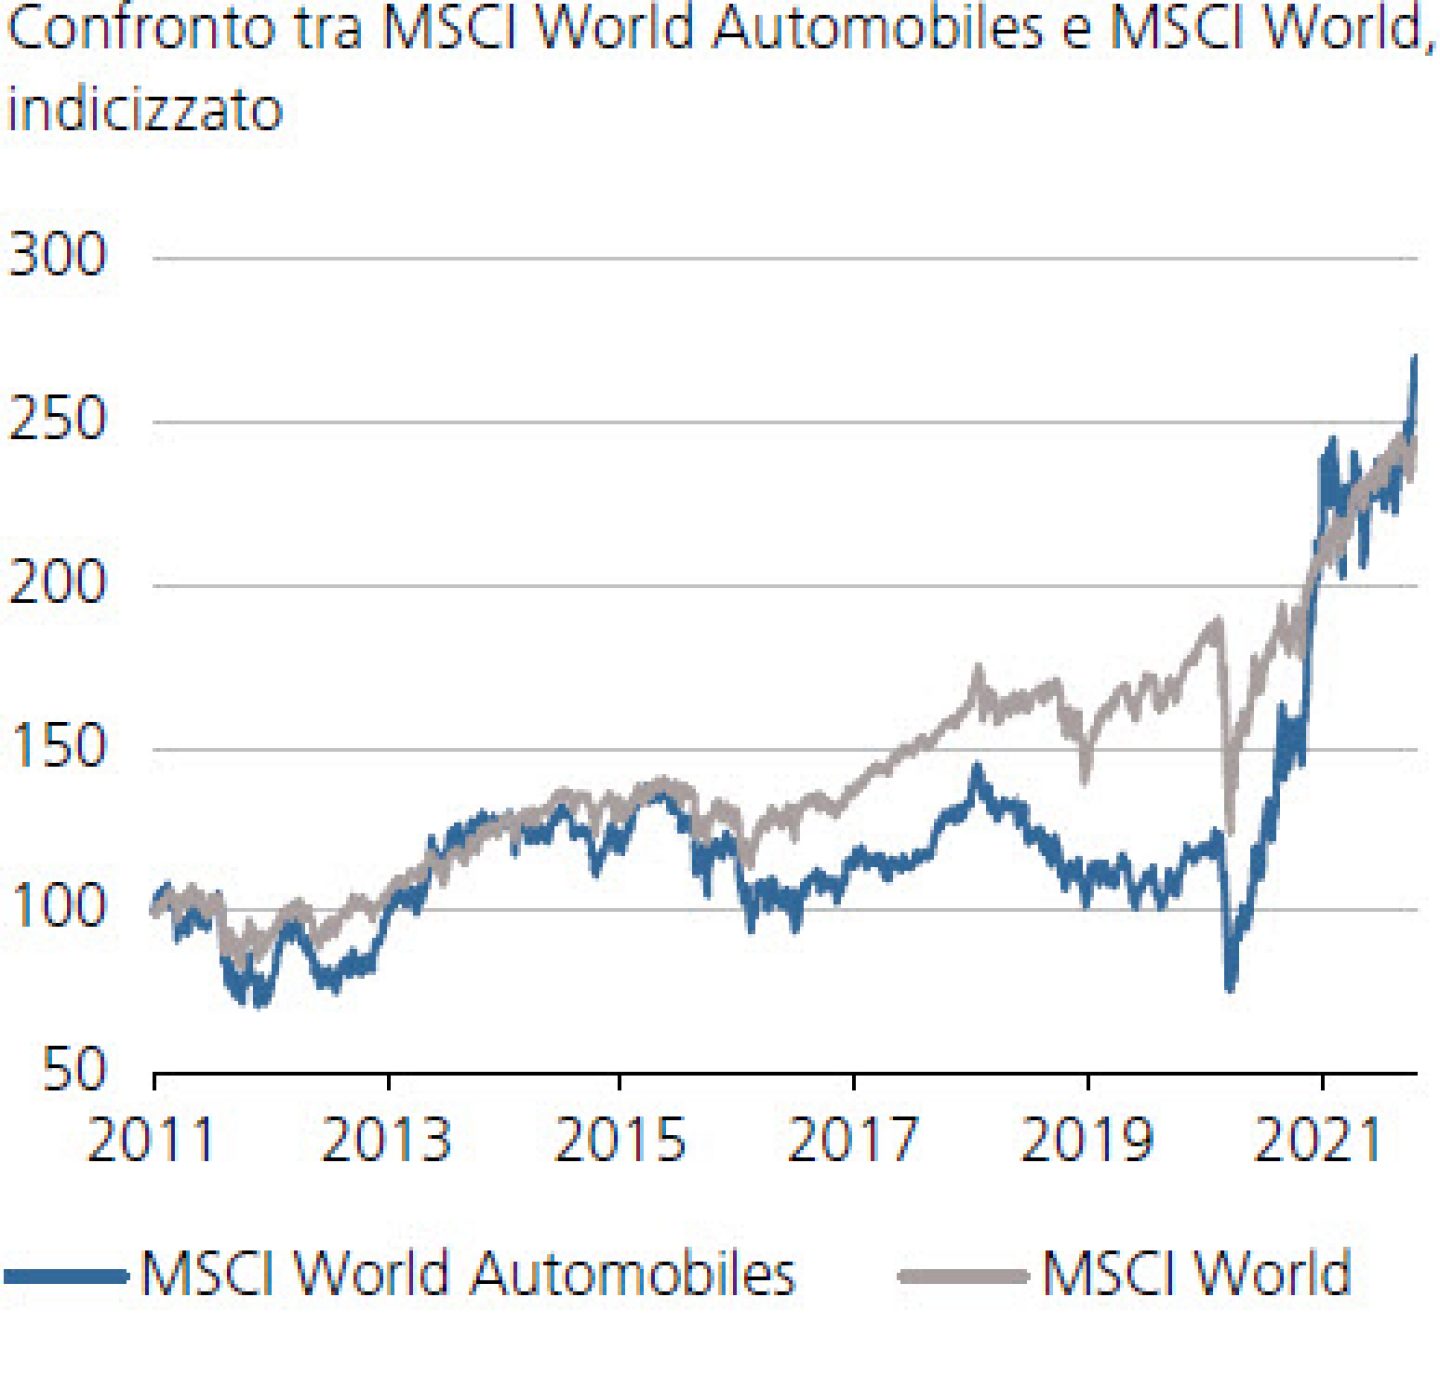 Confronto tra MSCI World Automobiles e MSCI World, indicizzato